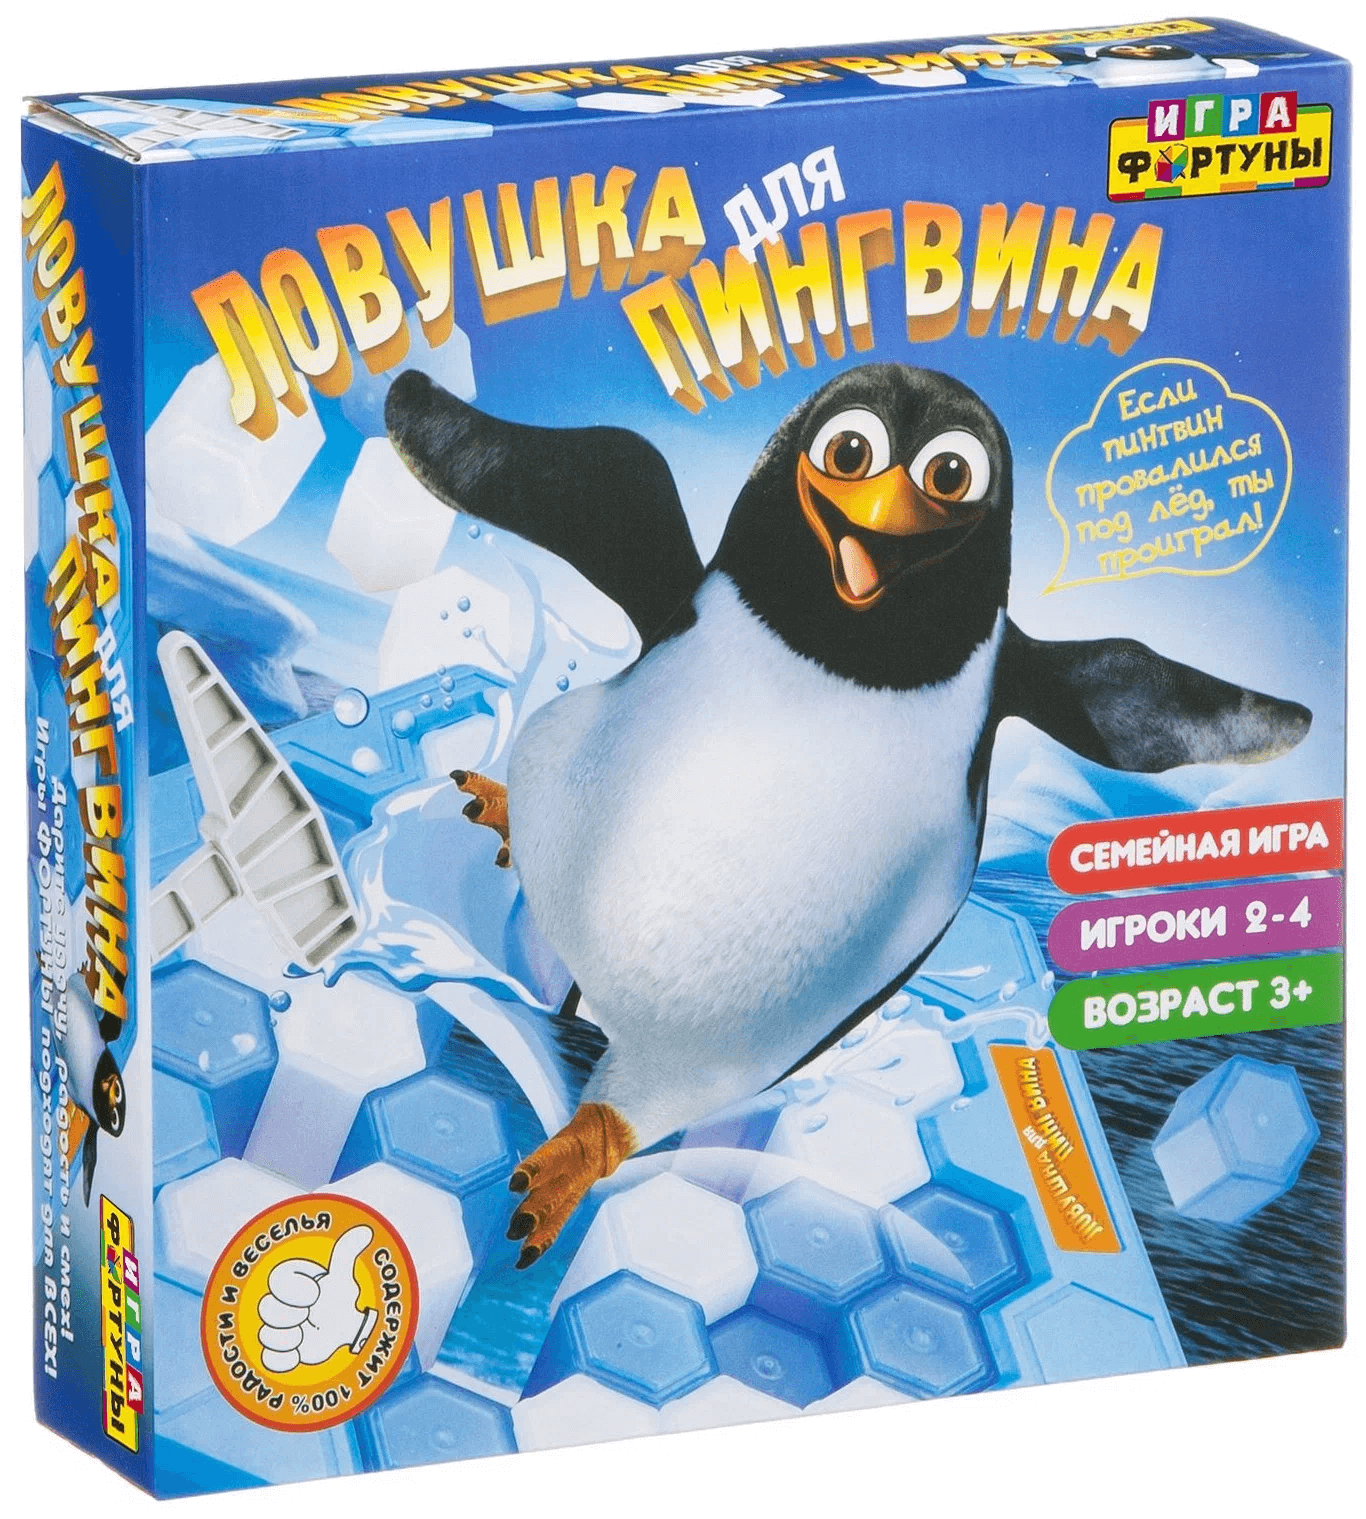 Фортуна Настольная семейная игра "ловушка для пингвина" Ф77172